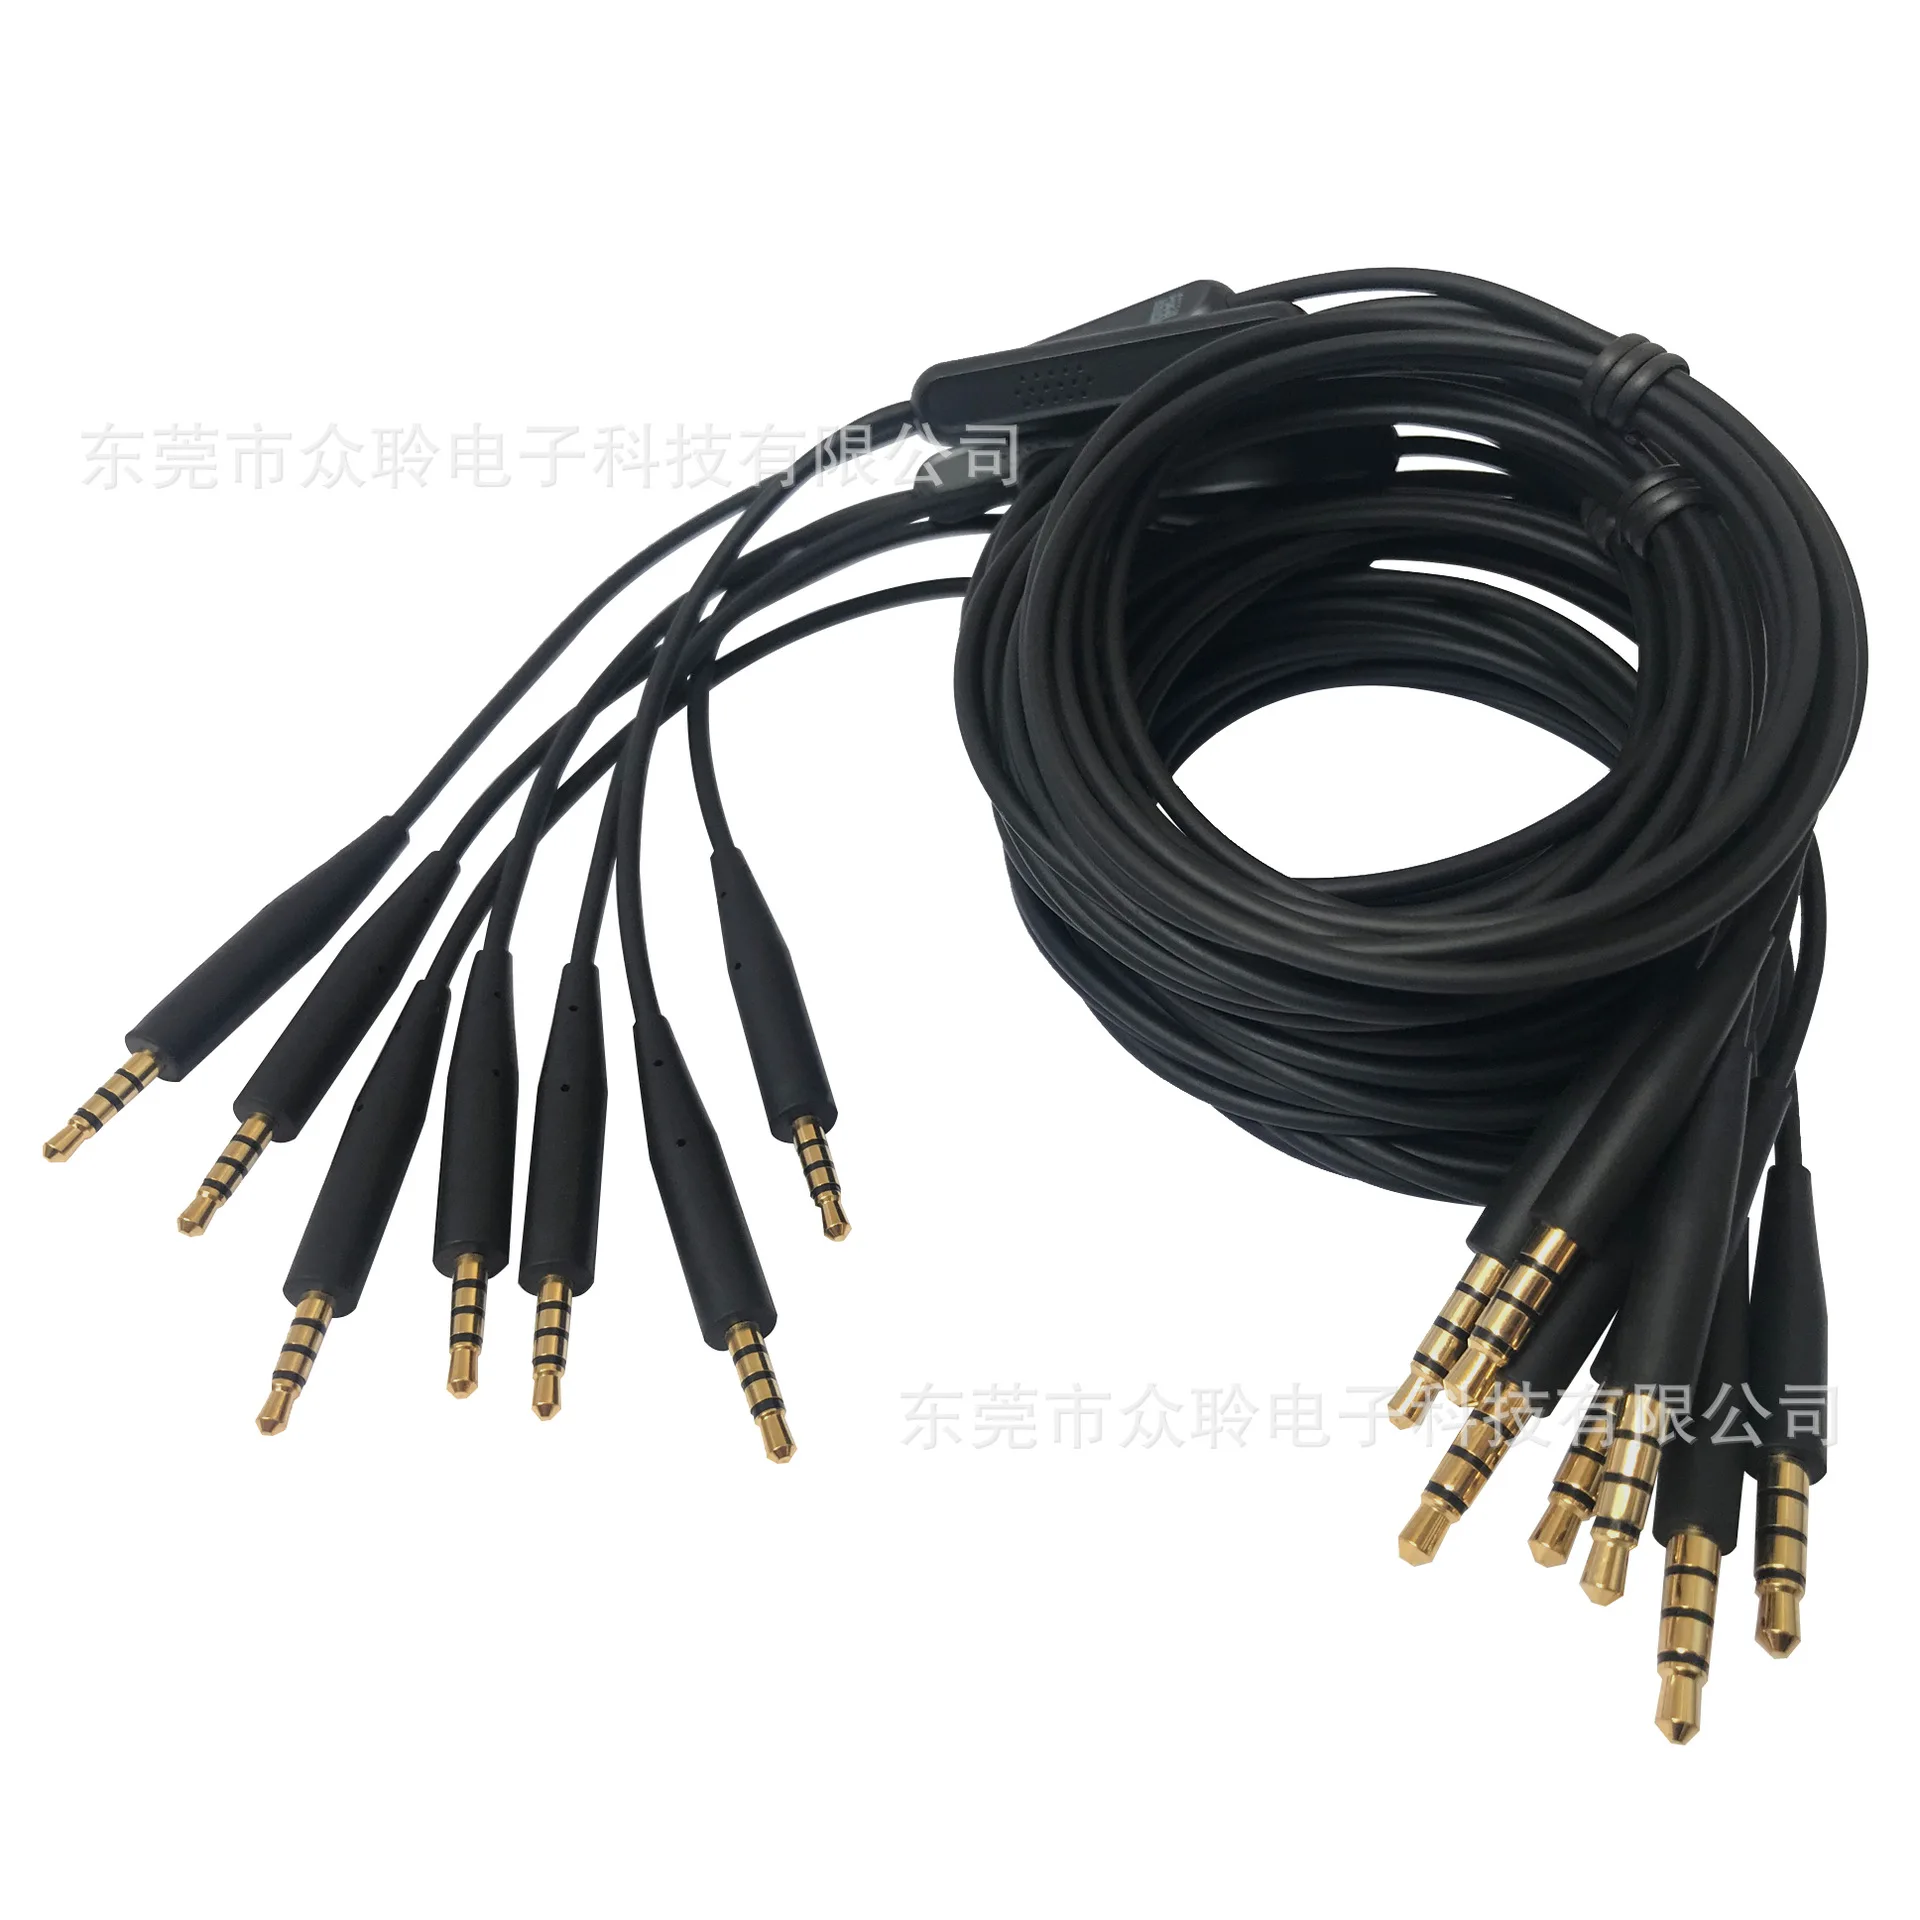 3,5 мм до 2,5 мм Шнур для гарнитуры Сменный кабель для BOSE QC25 QC35 SoundTrue/link OE2/OE2I кабель для наушников ST аудио кабель